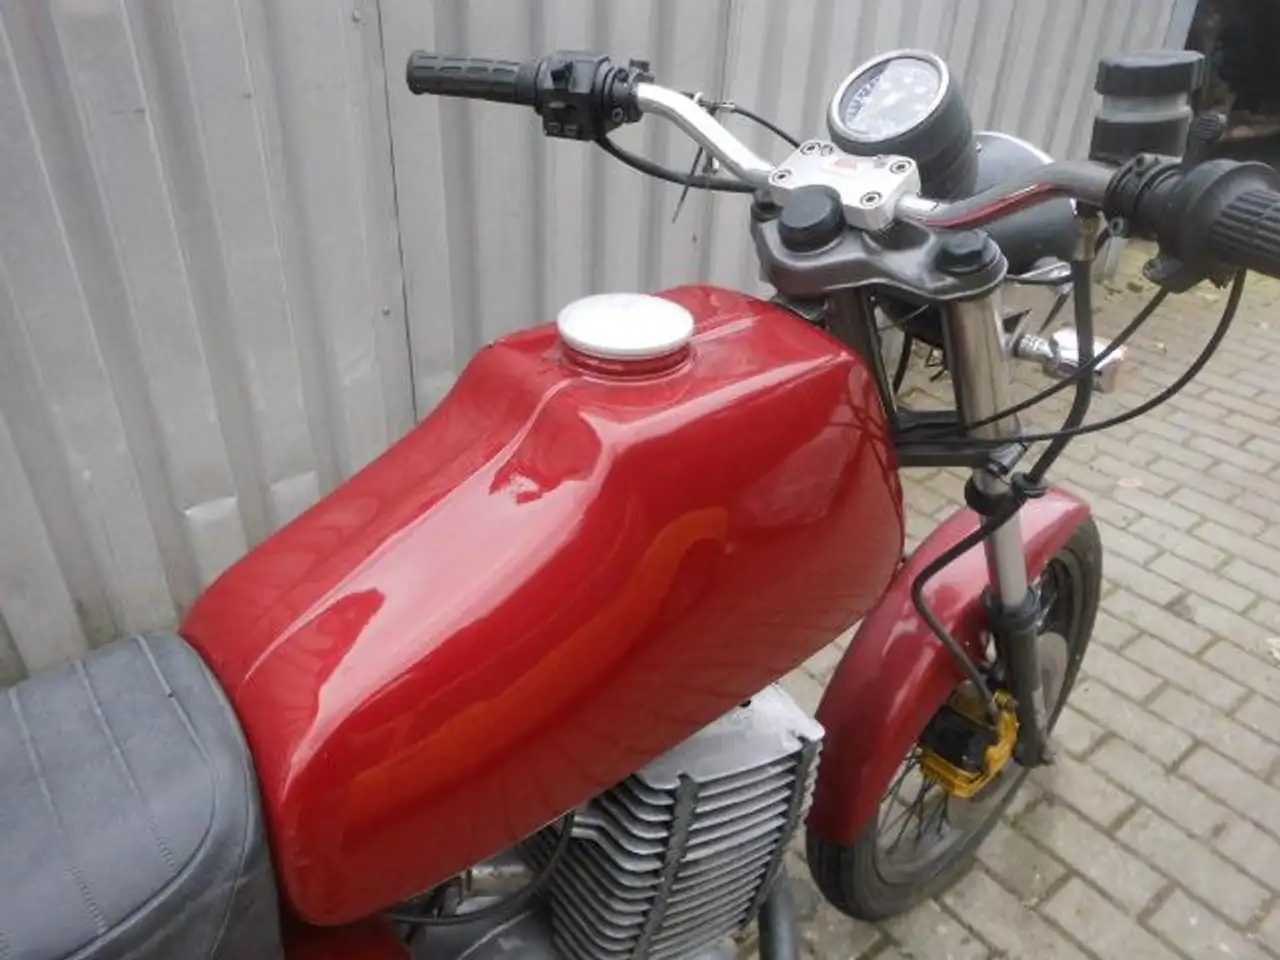 MZ ETZ 250 Oldtimer in Rot gebraucht in Calau für € 2.400,-